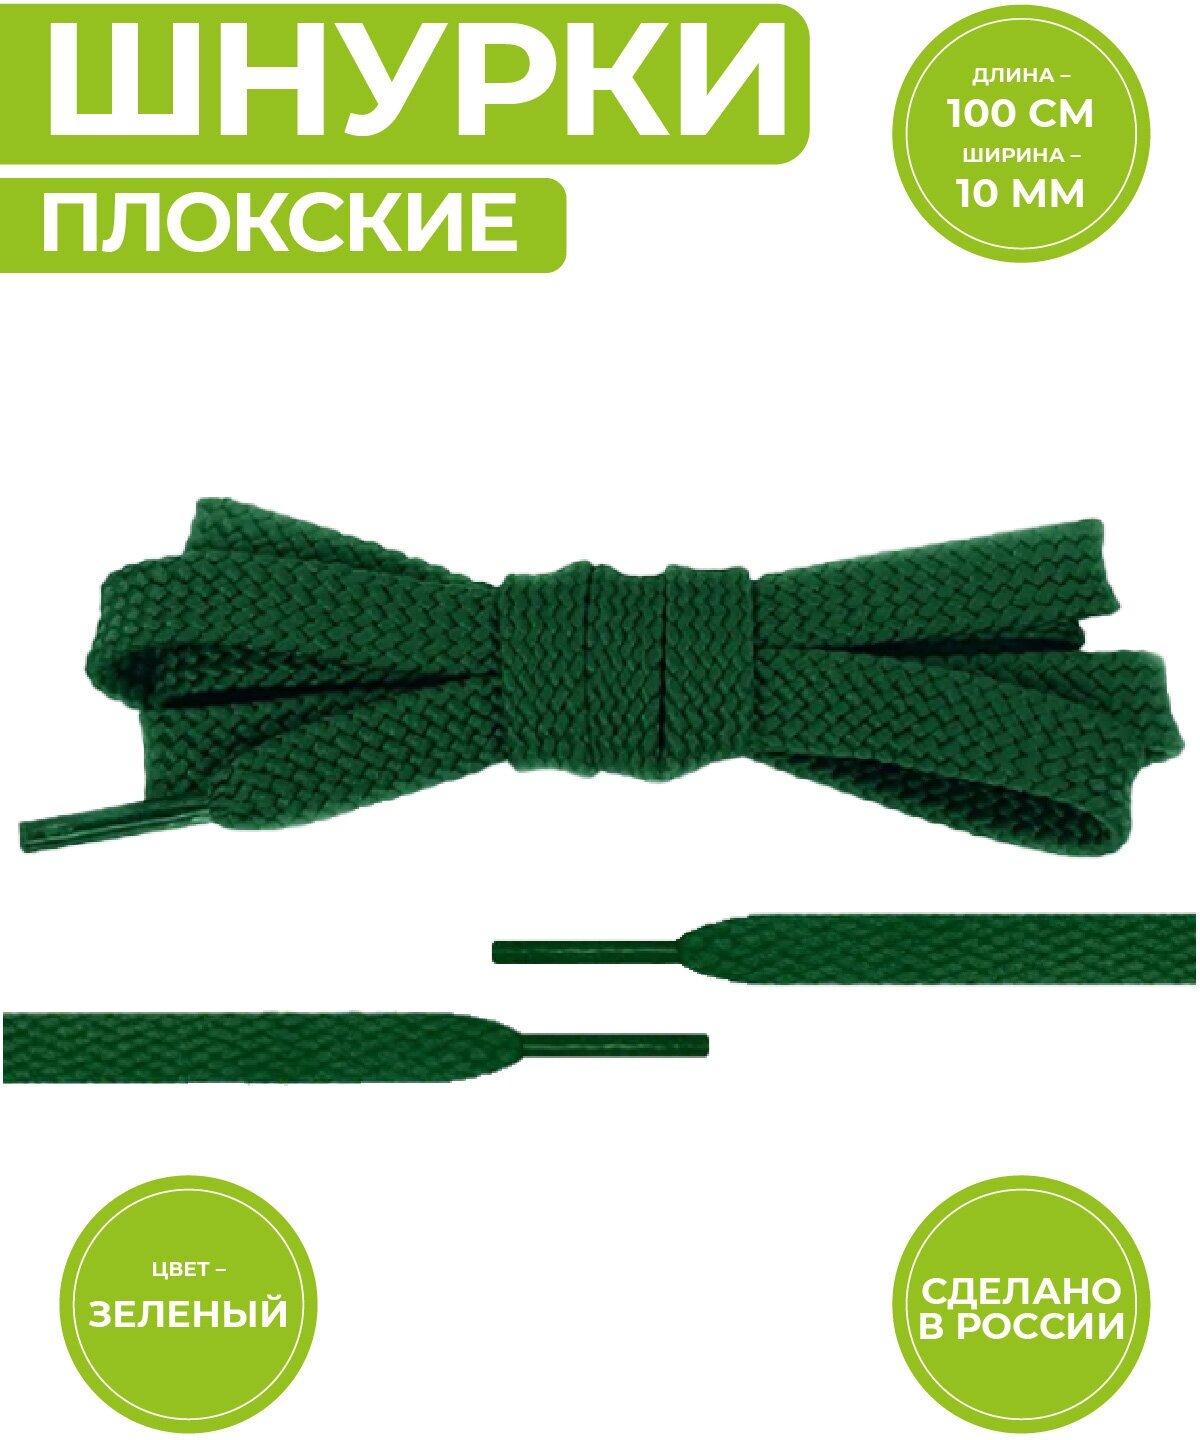 Шнурки для обуви плоские, длина 100 сантиметров, ширина 1 см. Сделаны в России. Зеленые